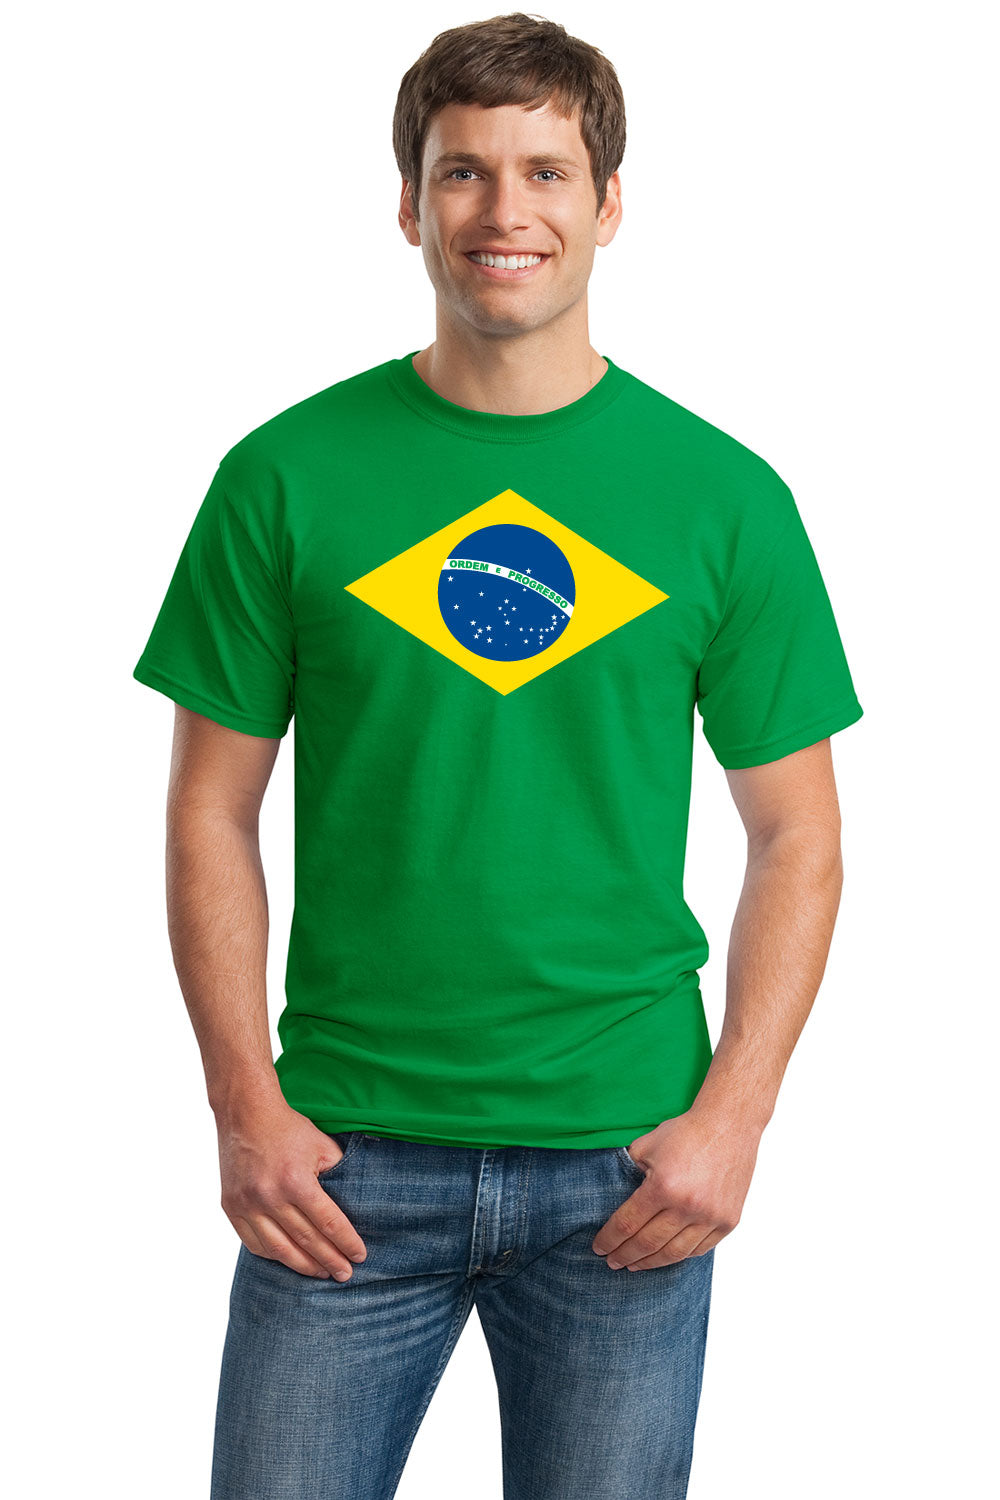 BRAZIL NATIONAL FLAG Unisex T-shirt / Bandeira do Brasil, Brazilian Tee